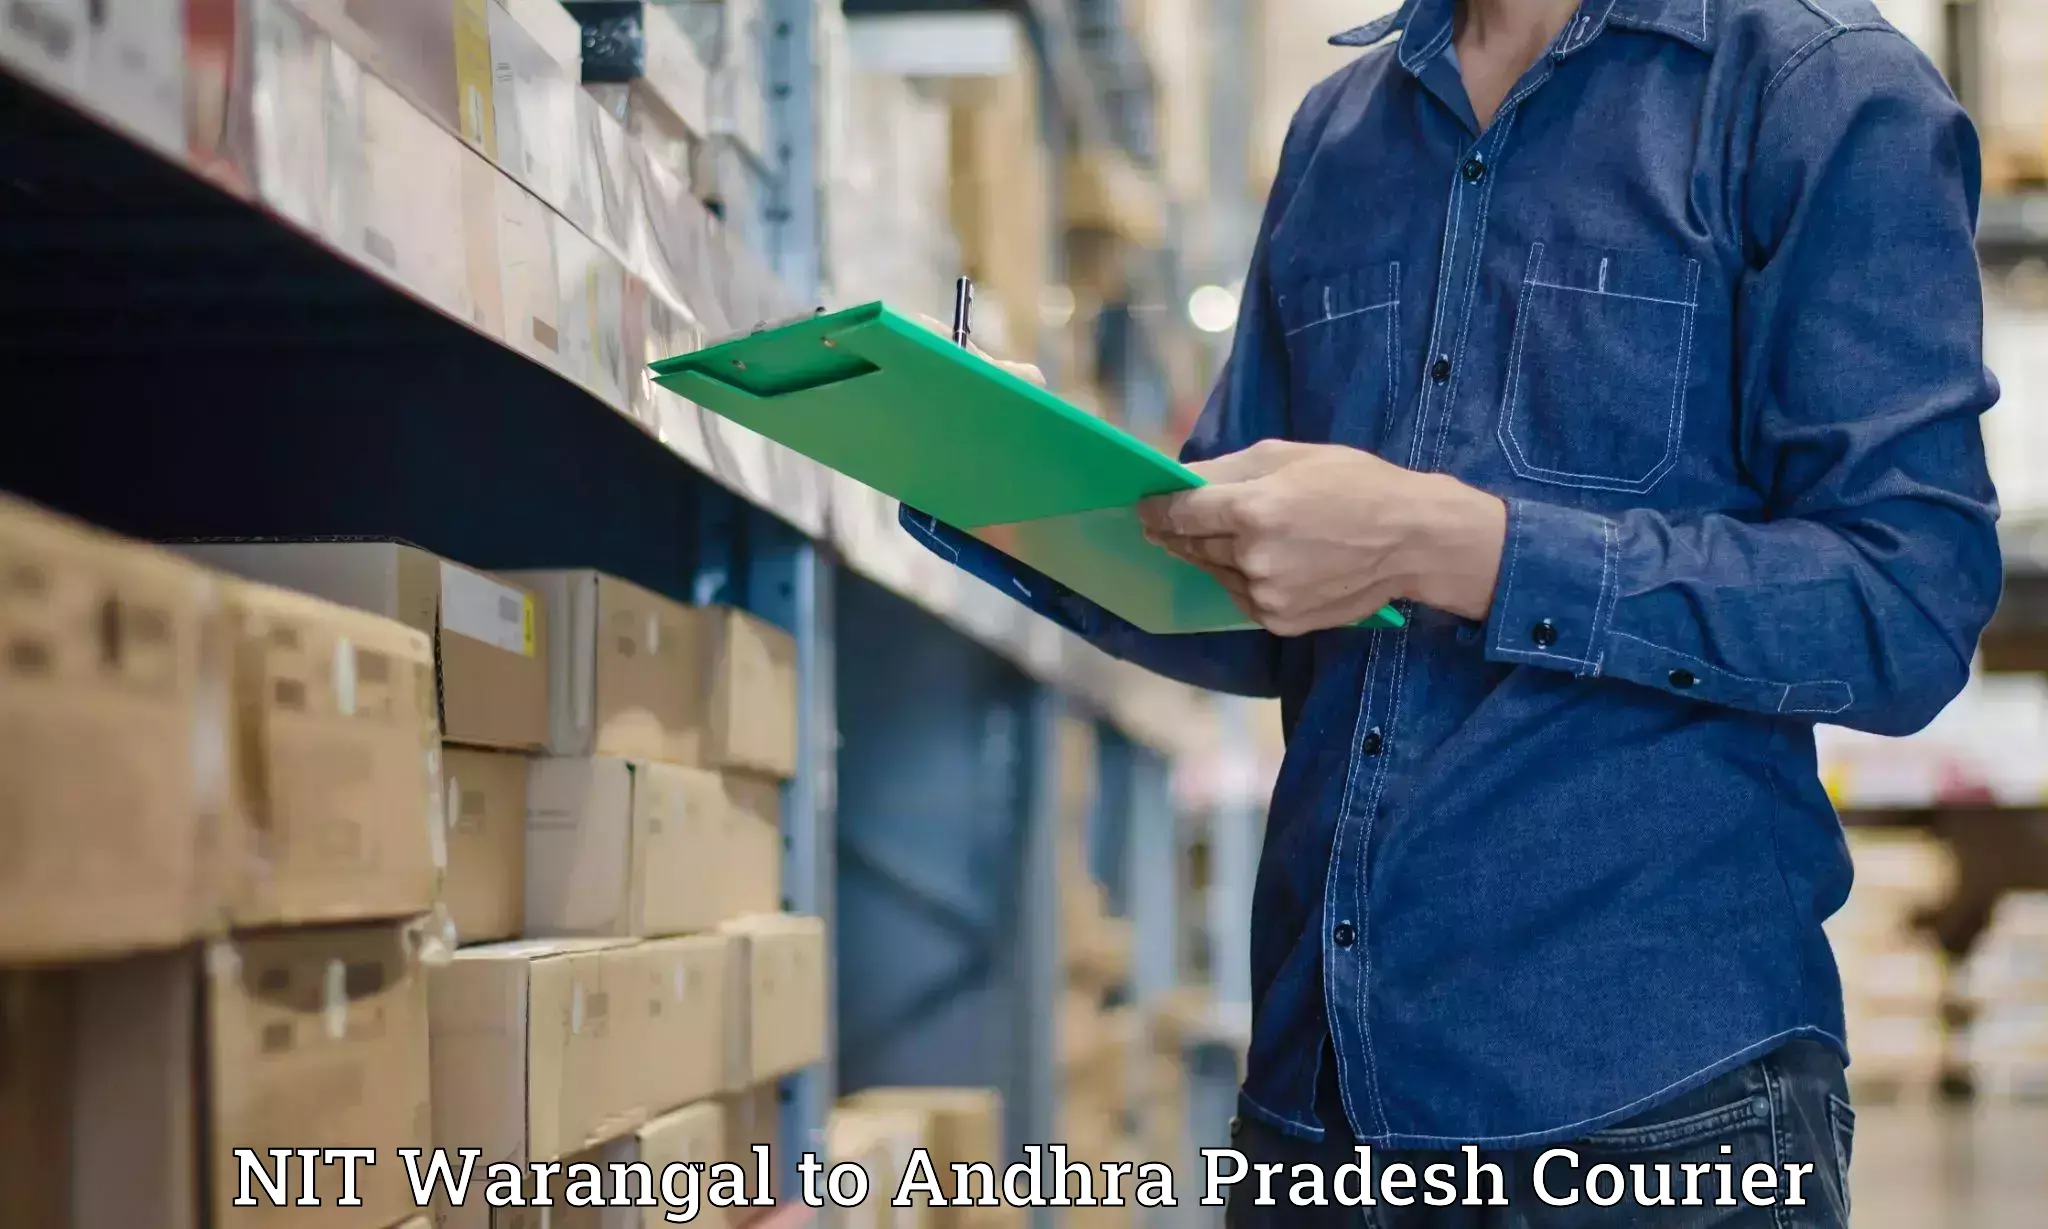 Professional courier handling in NIT Warangal to Kadiri